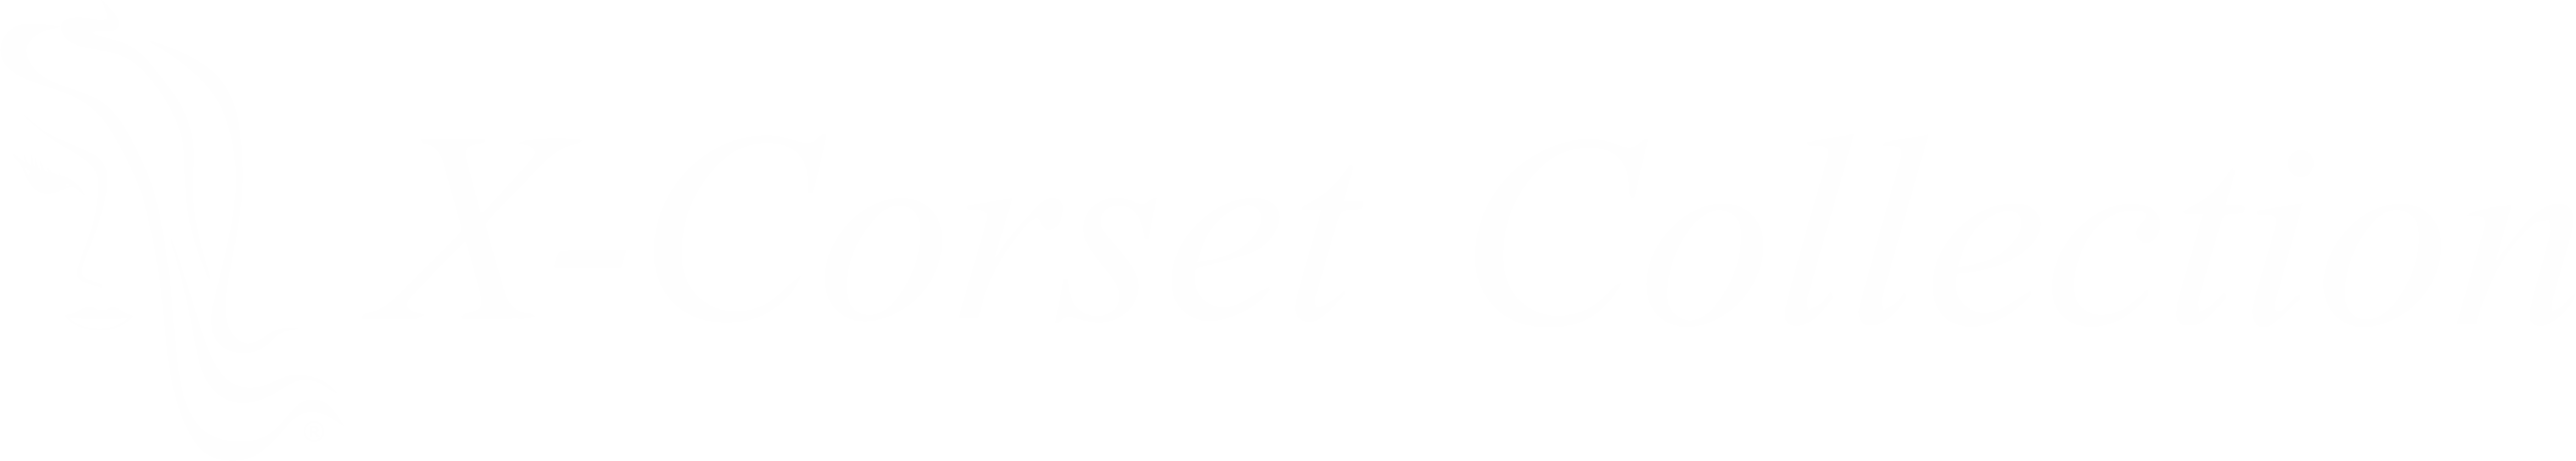 X-Corset